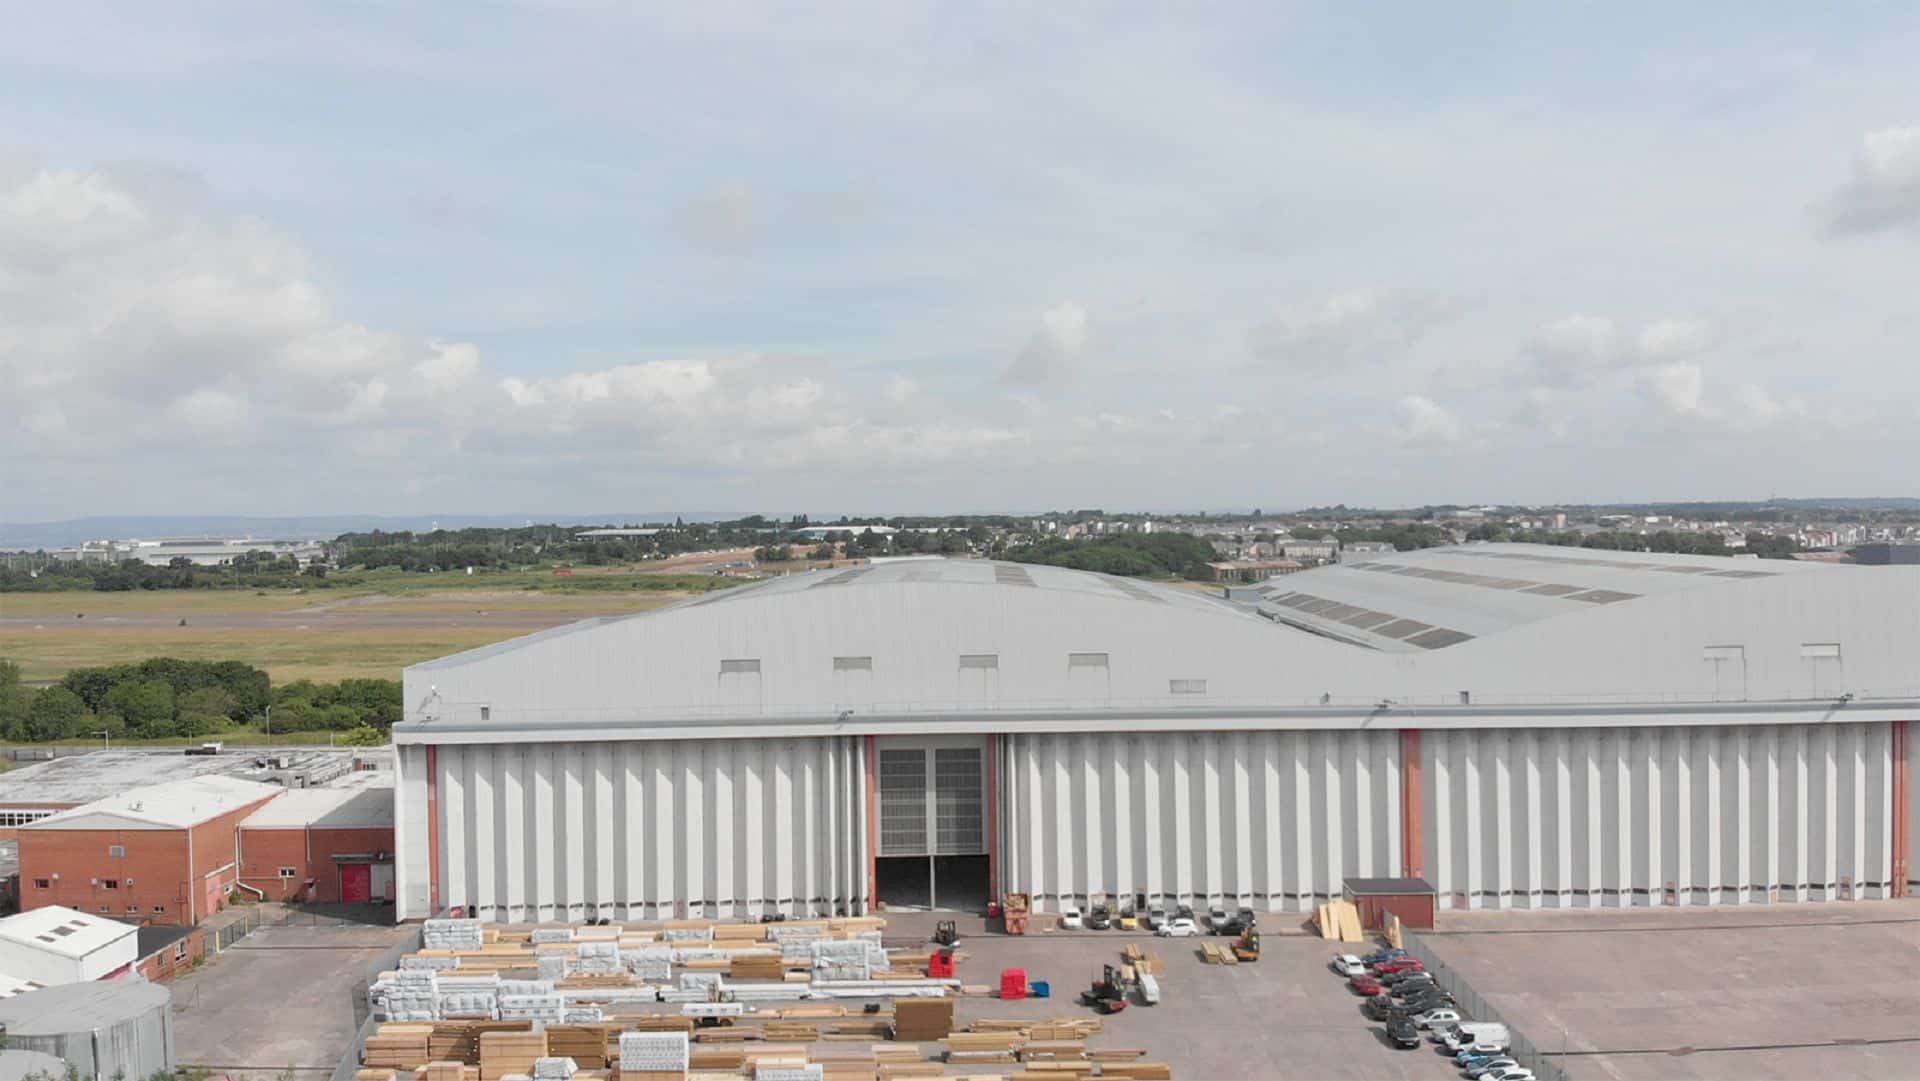 Brabazon Hangar in UK